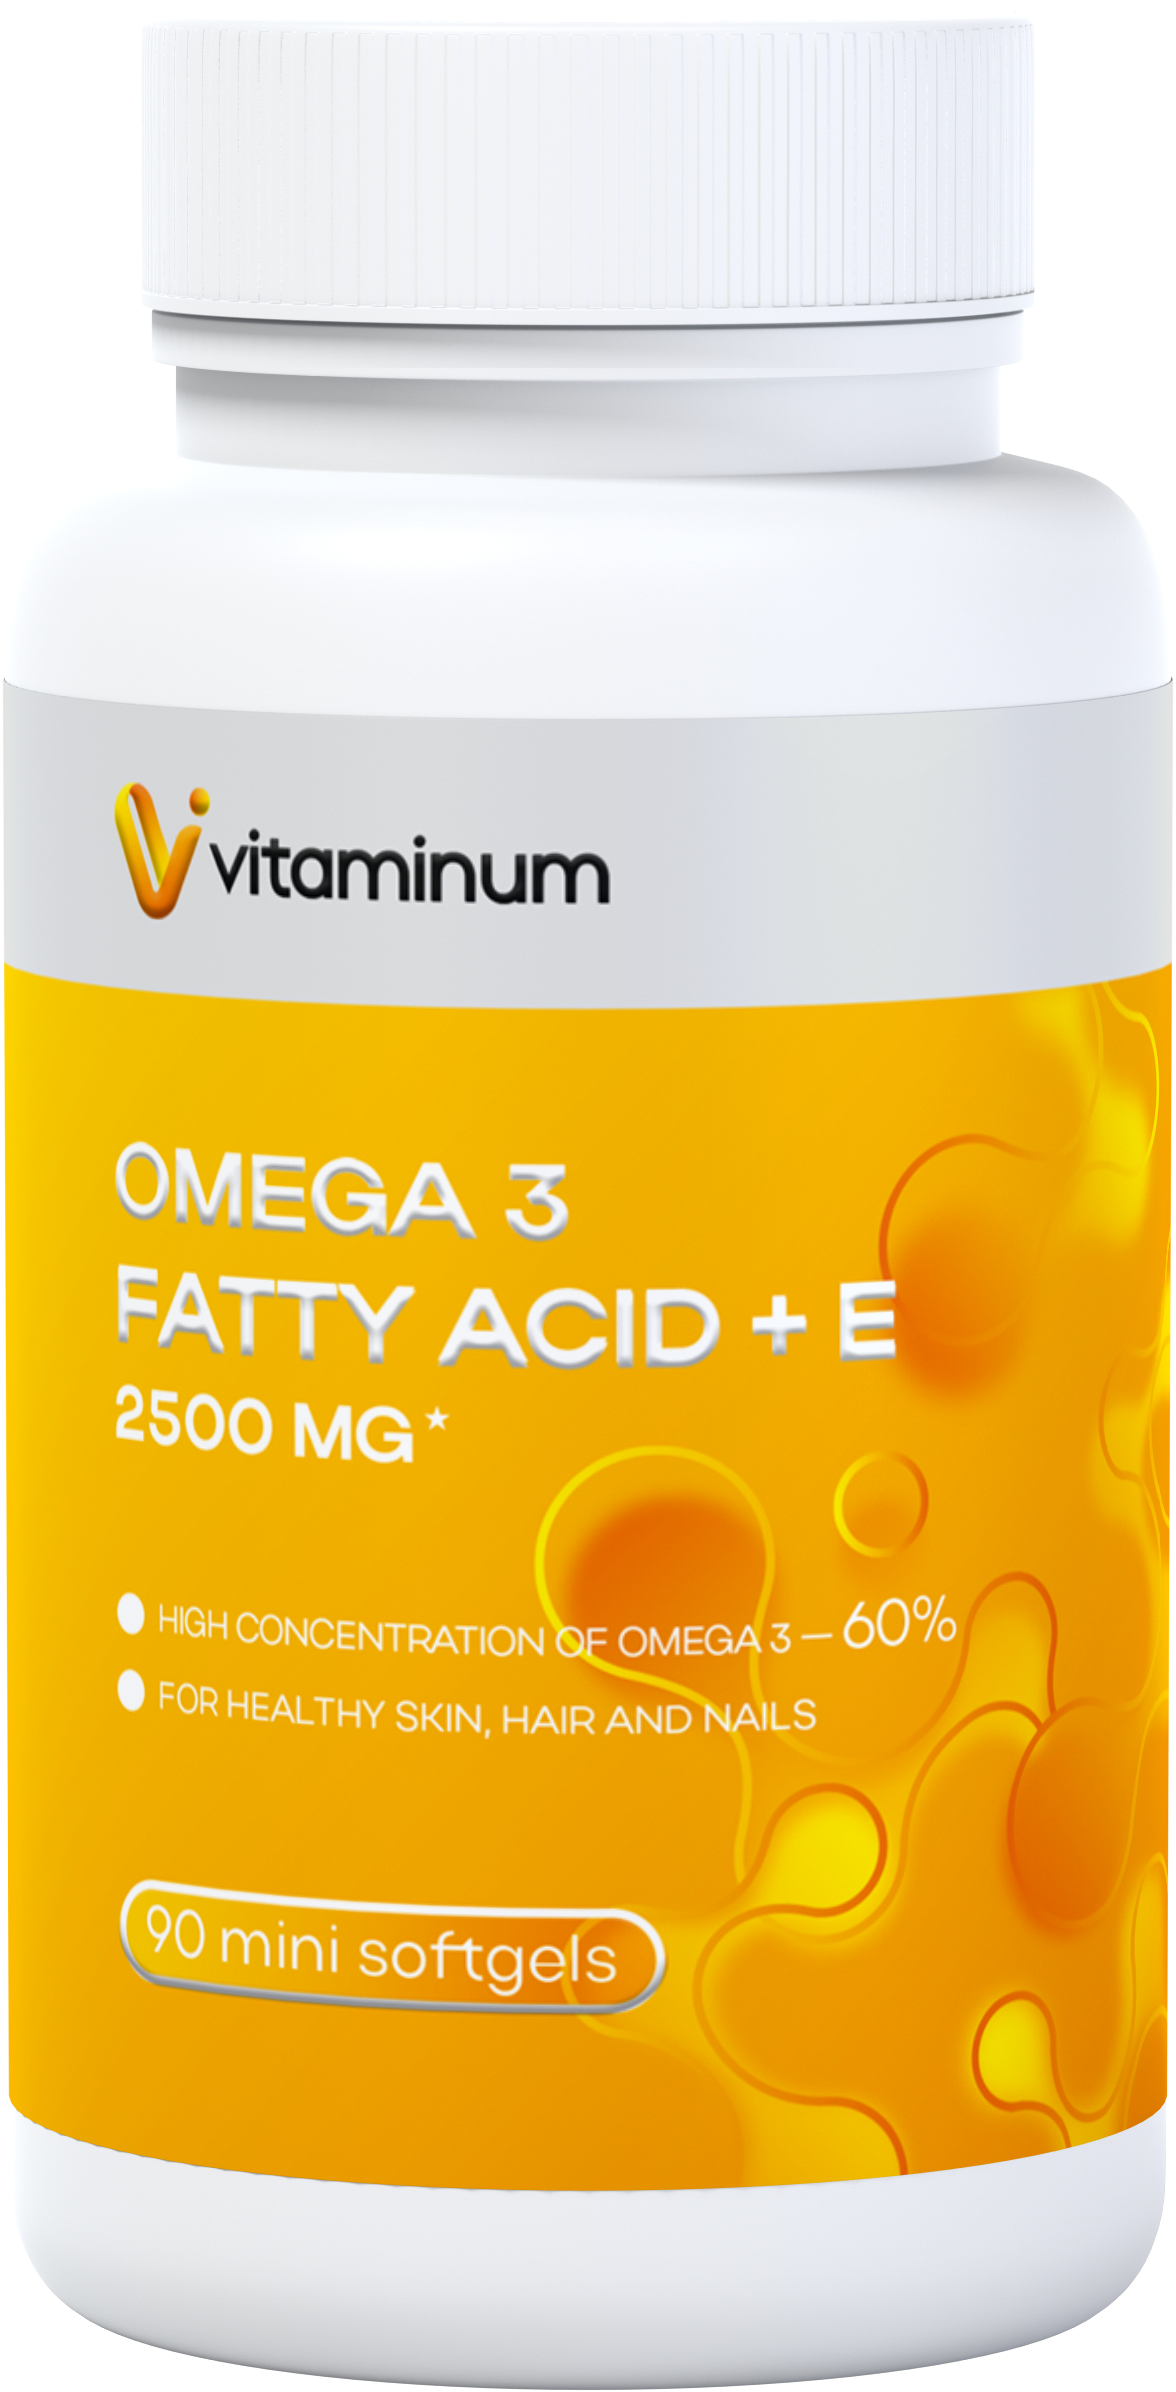  Vitaminum ОМЕГА 3 60% + витамин Е (2500 MG*) 90 капсул 700 мг  в Белове